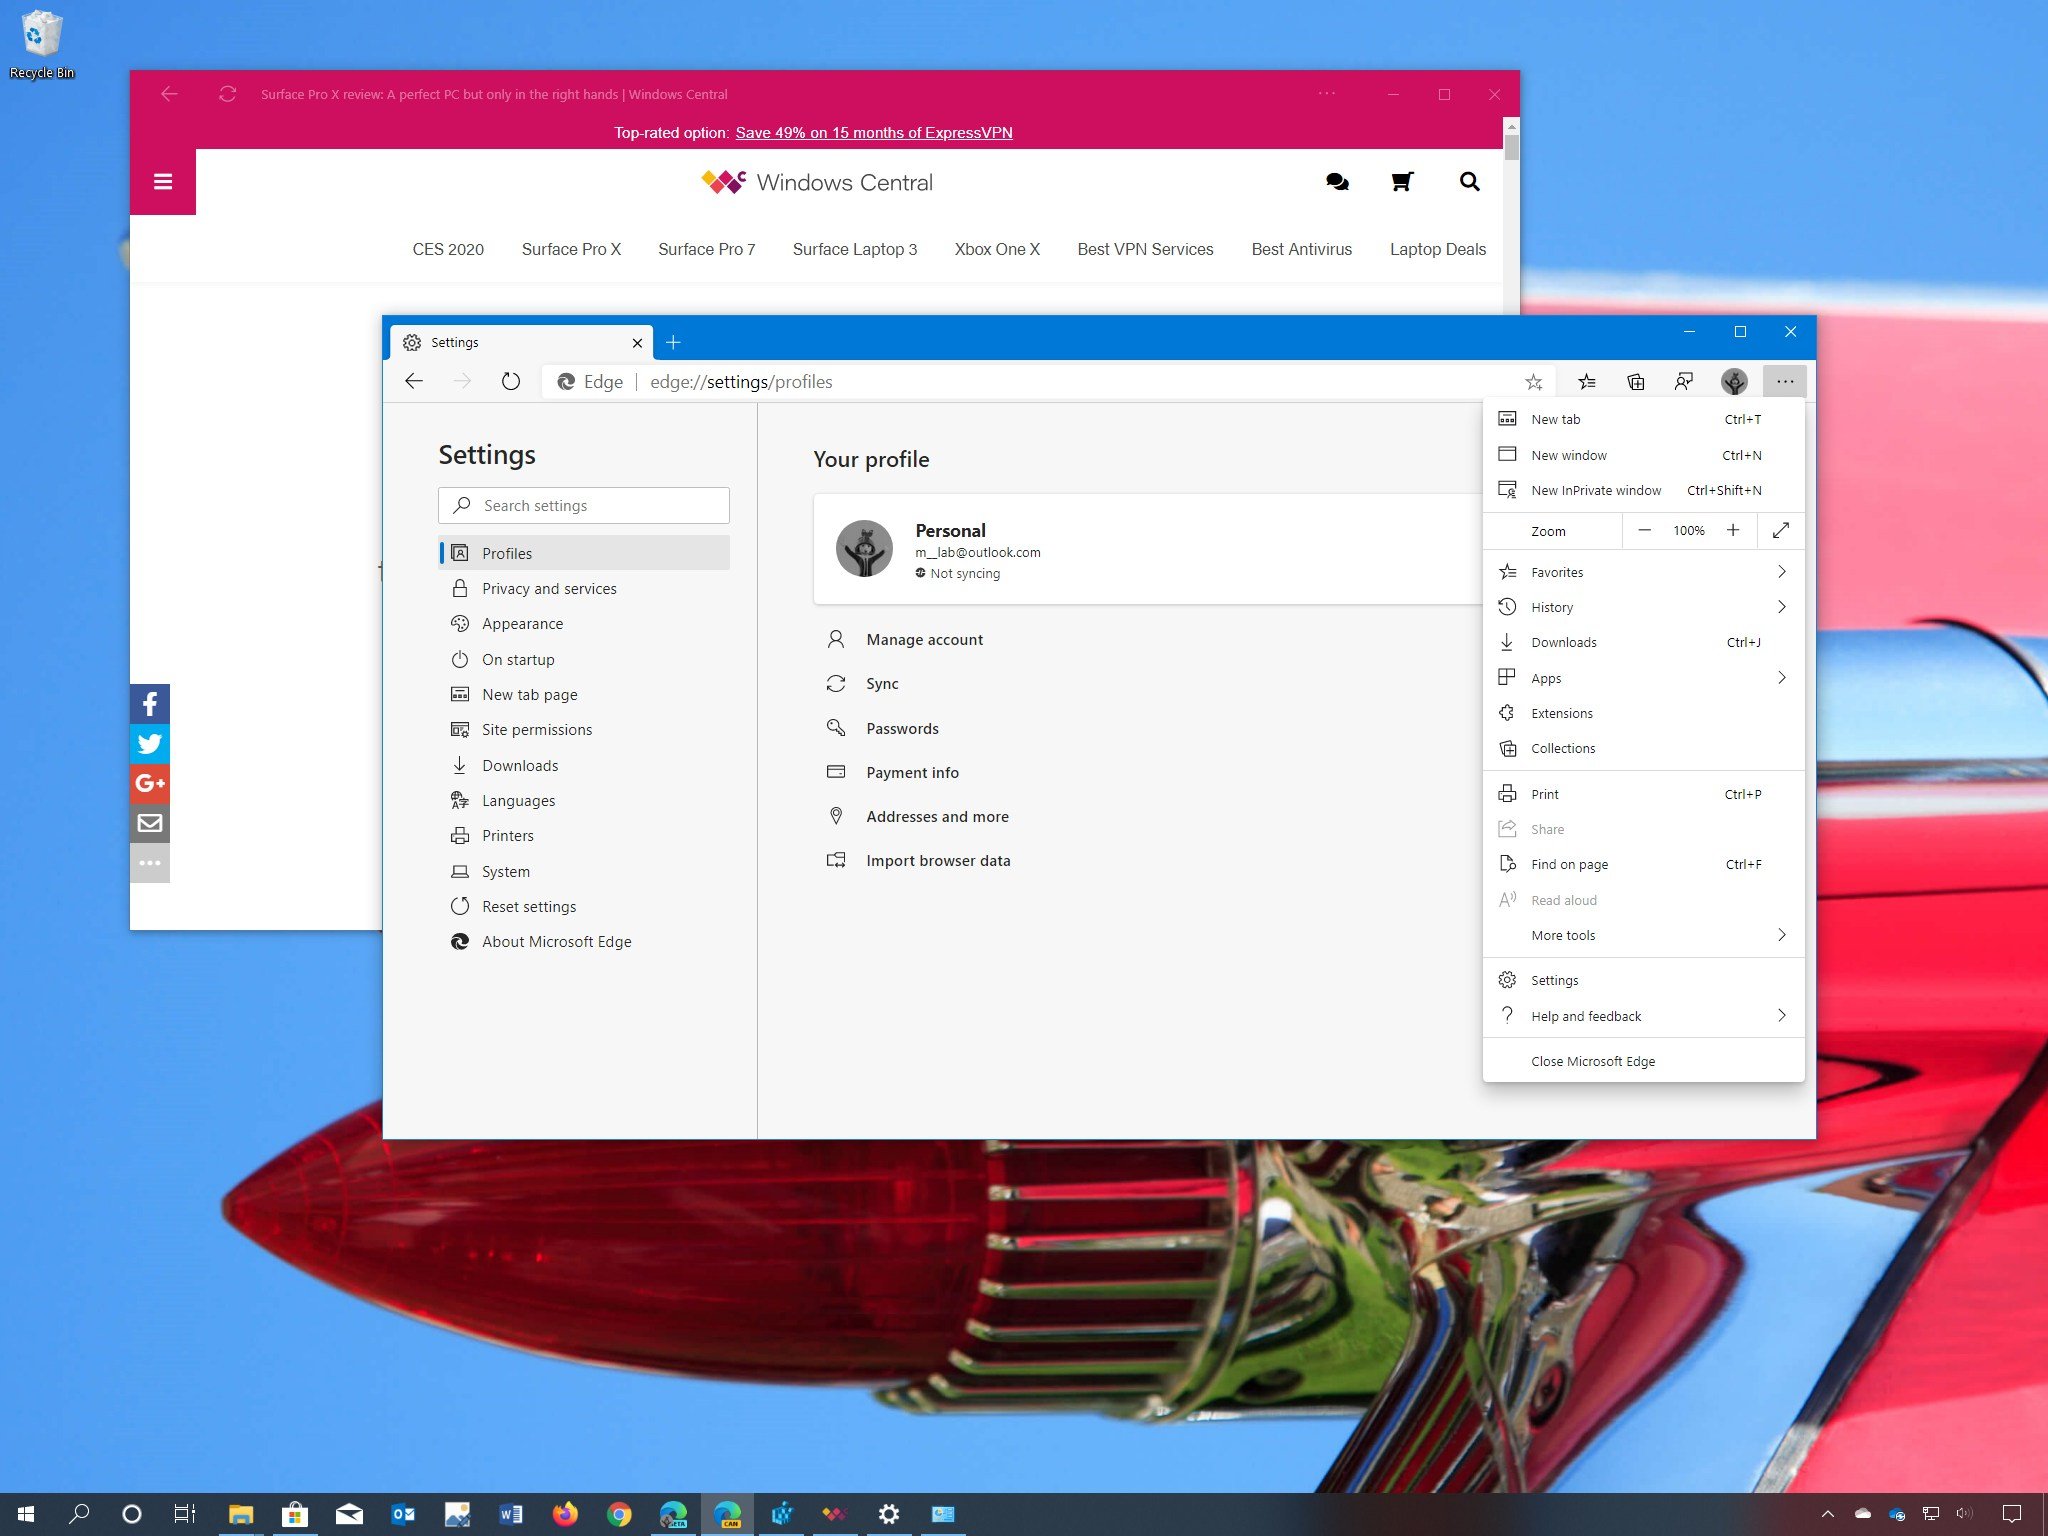 Microsoft Edge Chromium best features for Windows 10